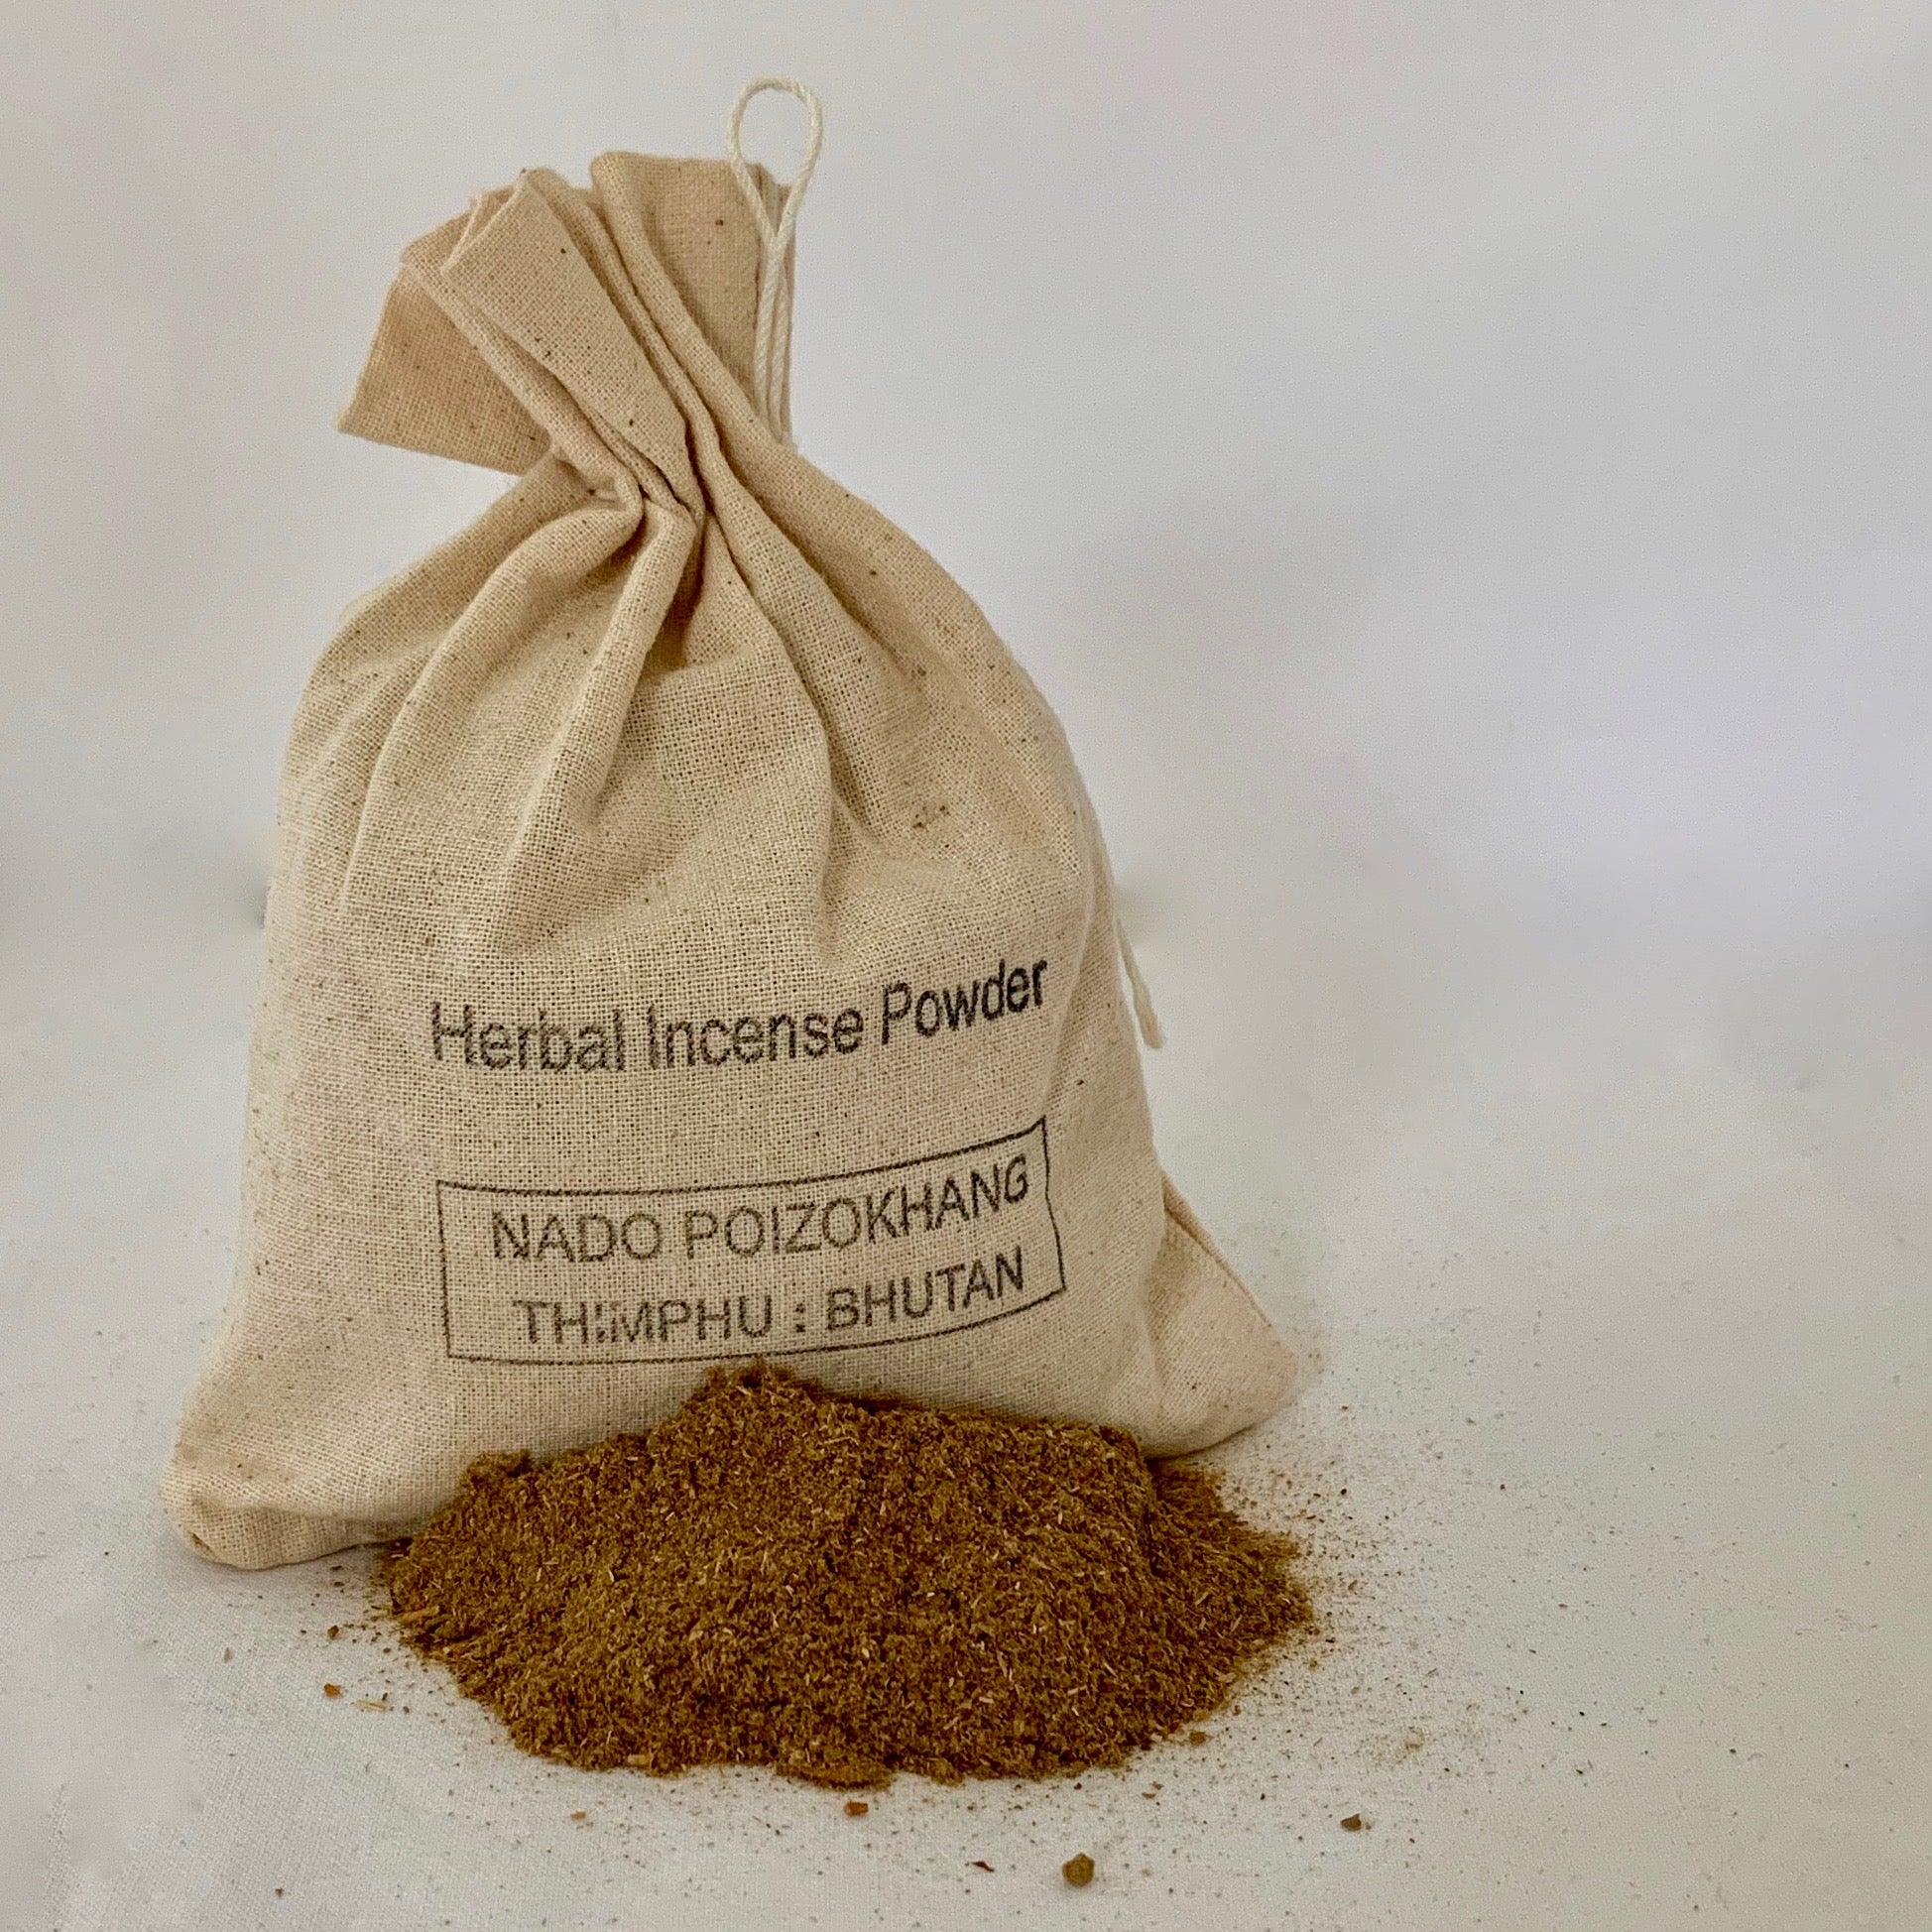 Nado's Bhutanese Sang - "Zangdrup" Herbal Incense Powder